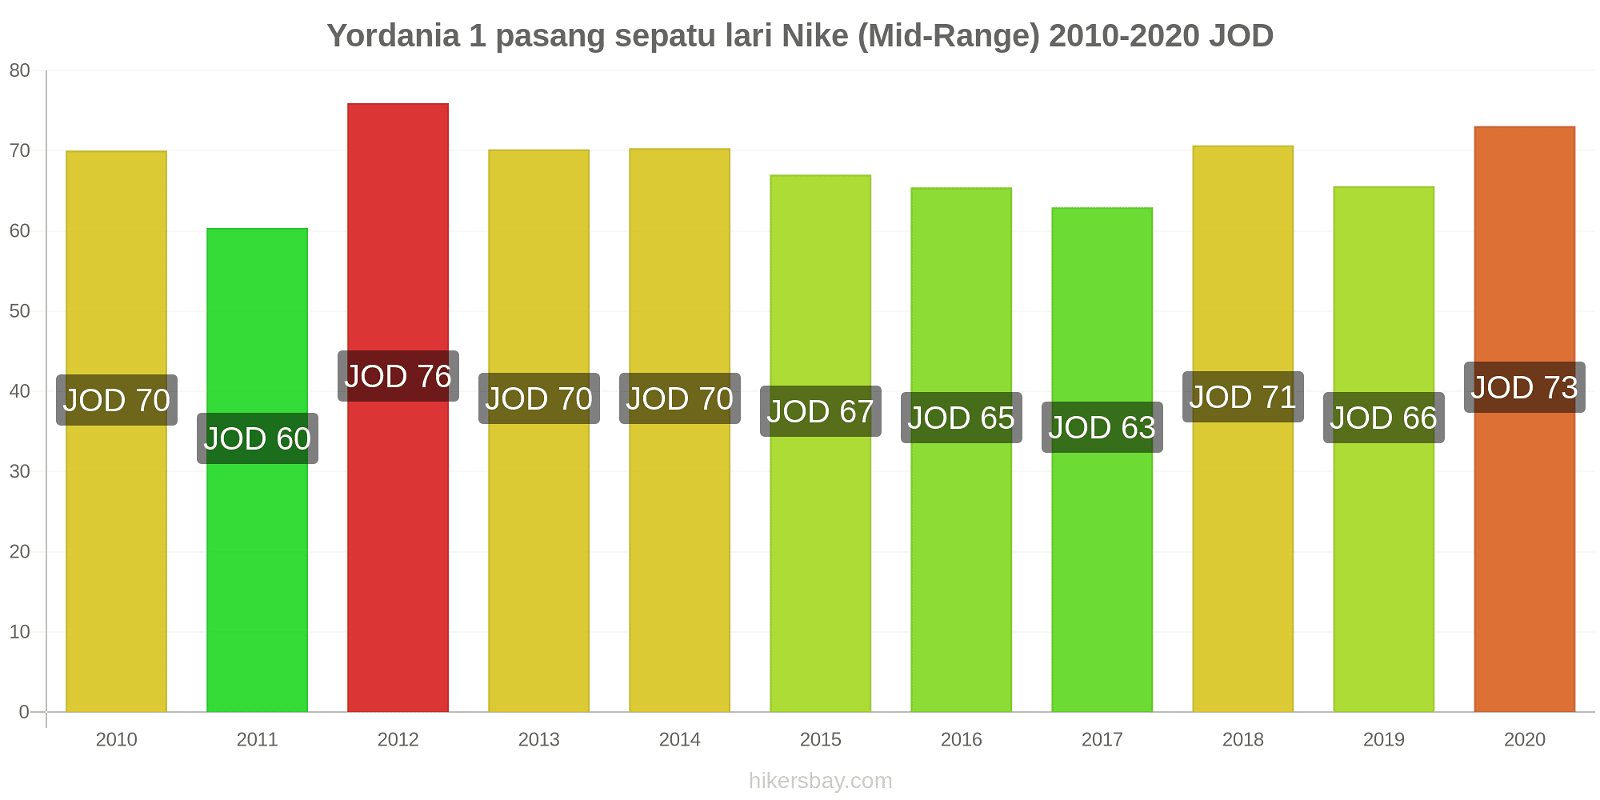 Yordania perubahan harga 1 pasang sepatu lari Nike (Mid-Range) hikersbay.com